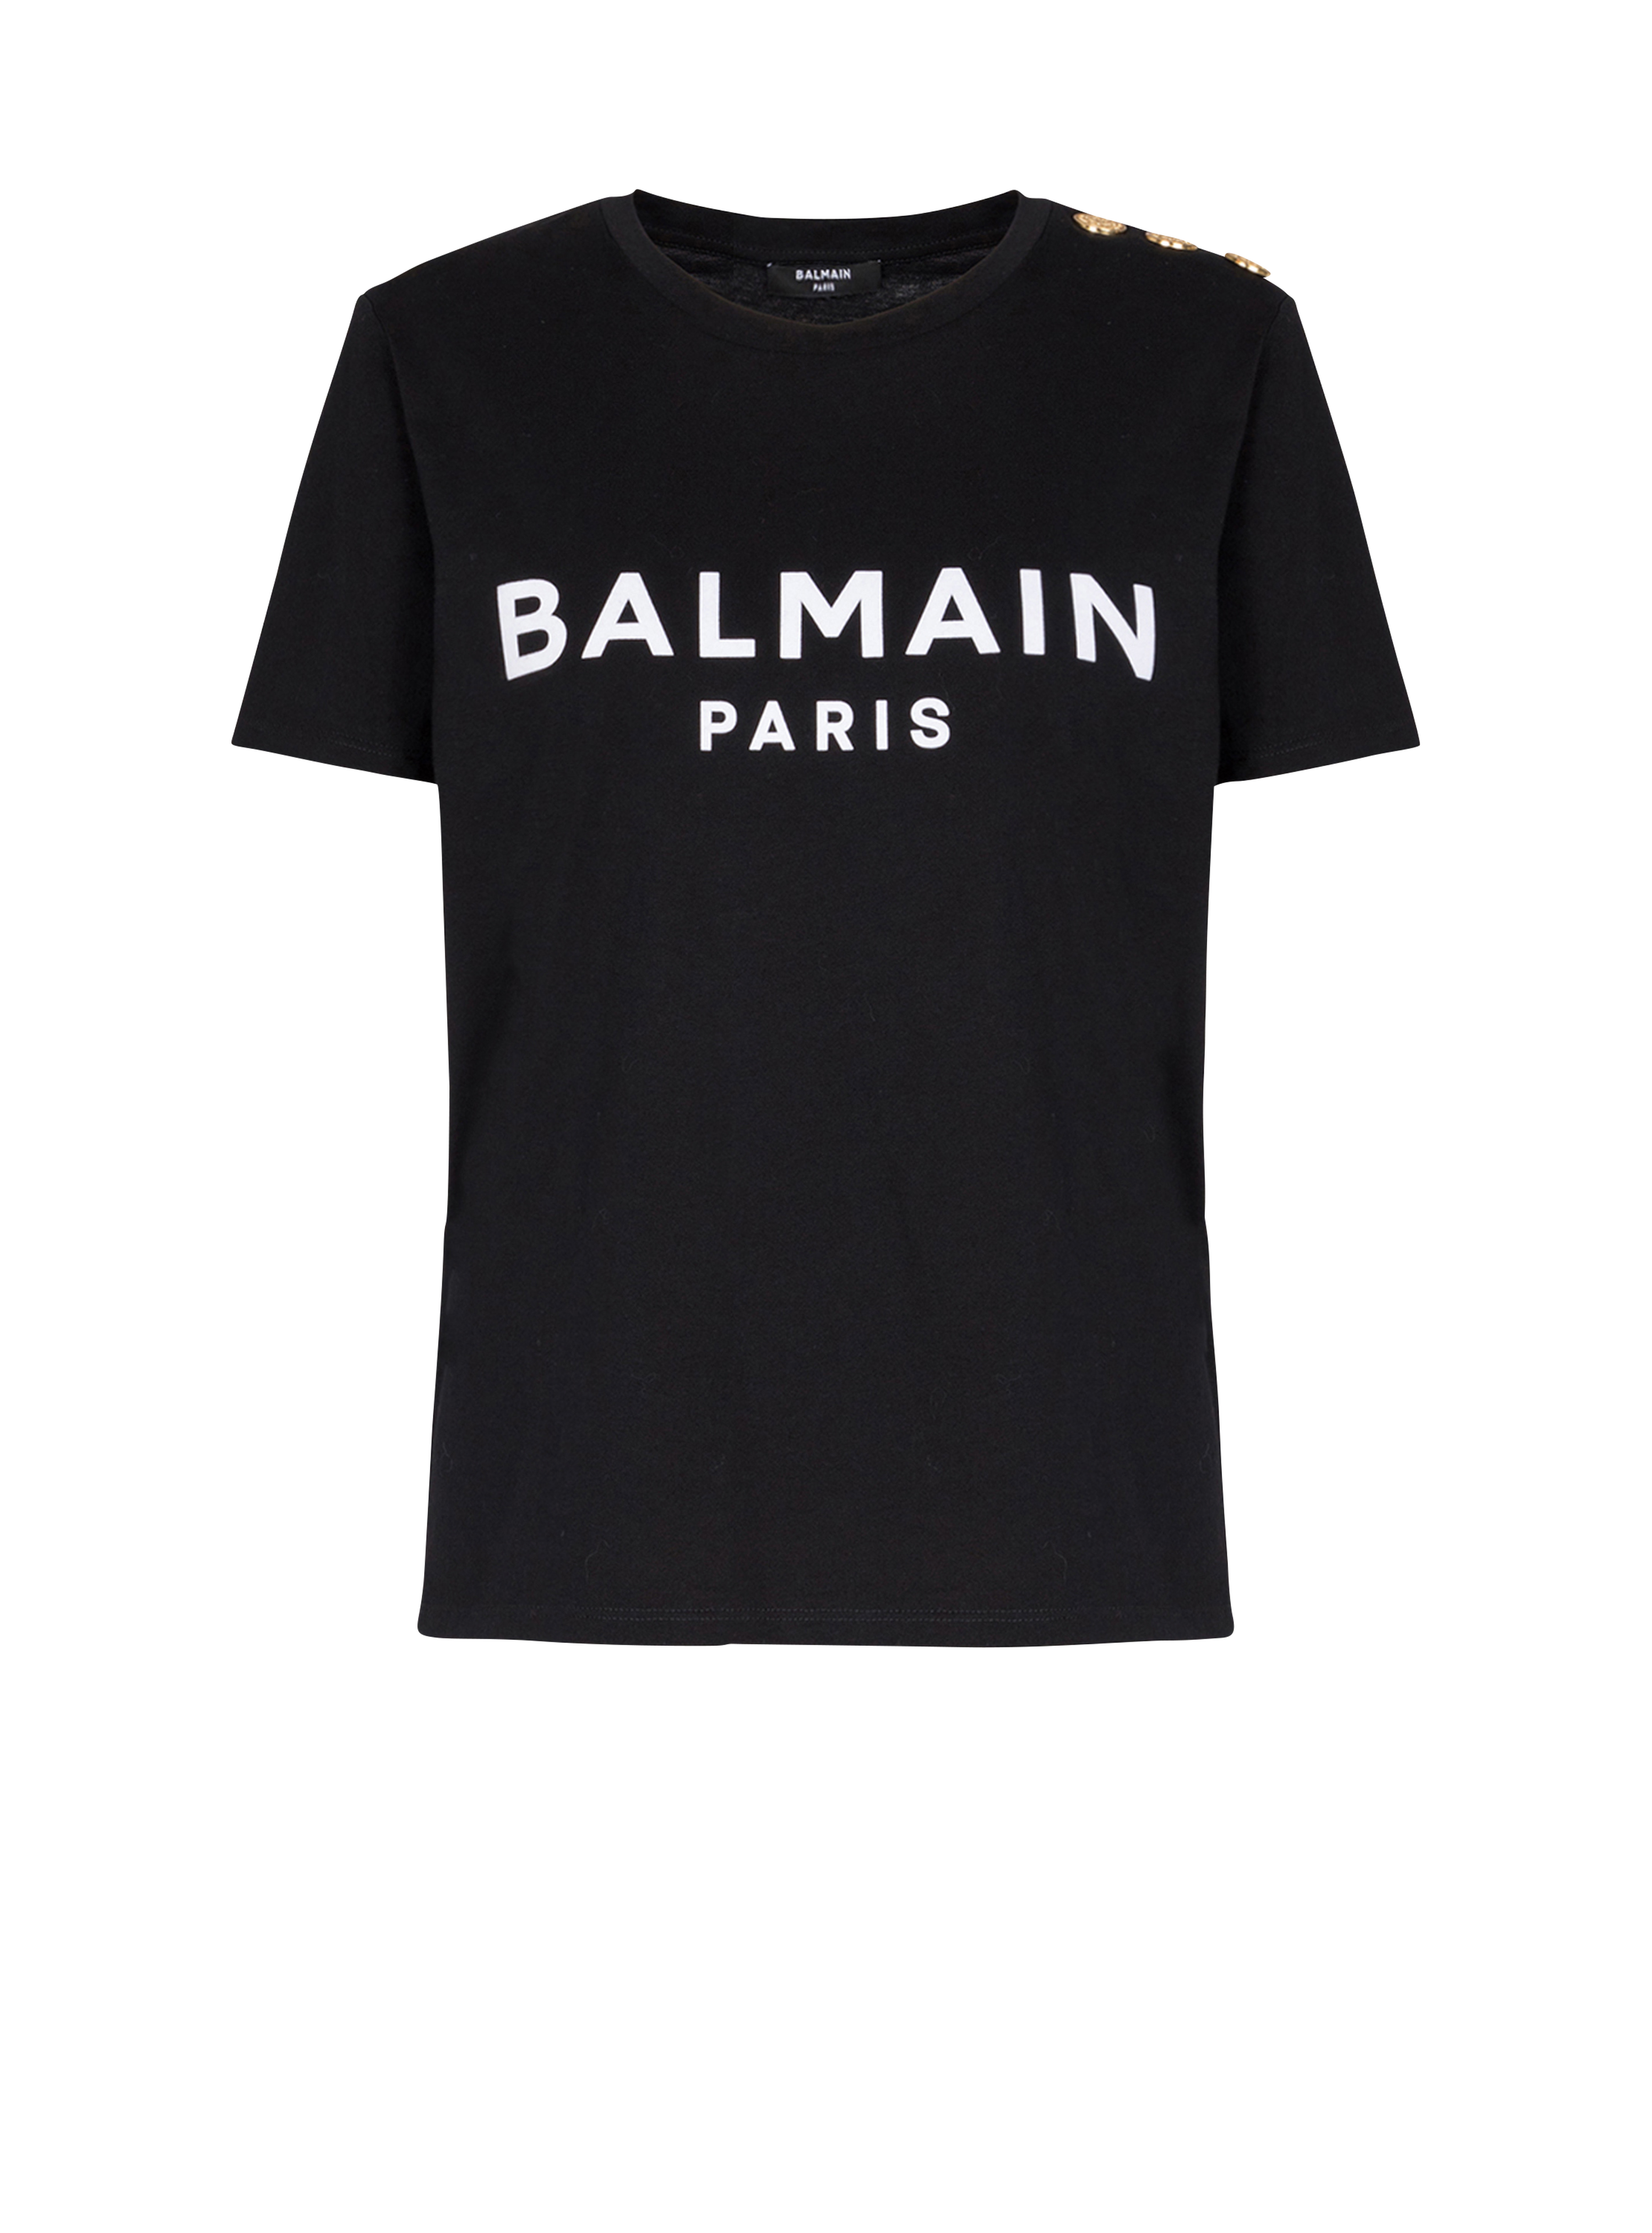 Balmain 로고 프린트 디테일 코튼 티셔츠, 검정색